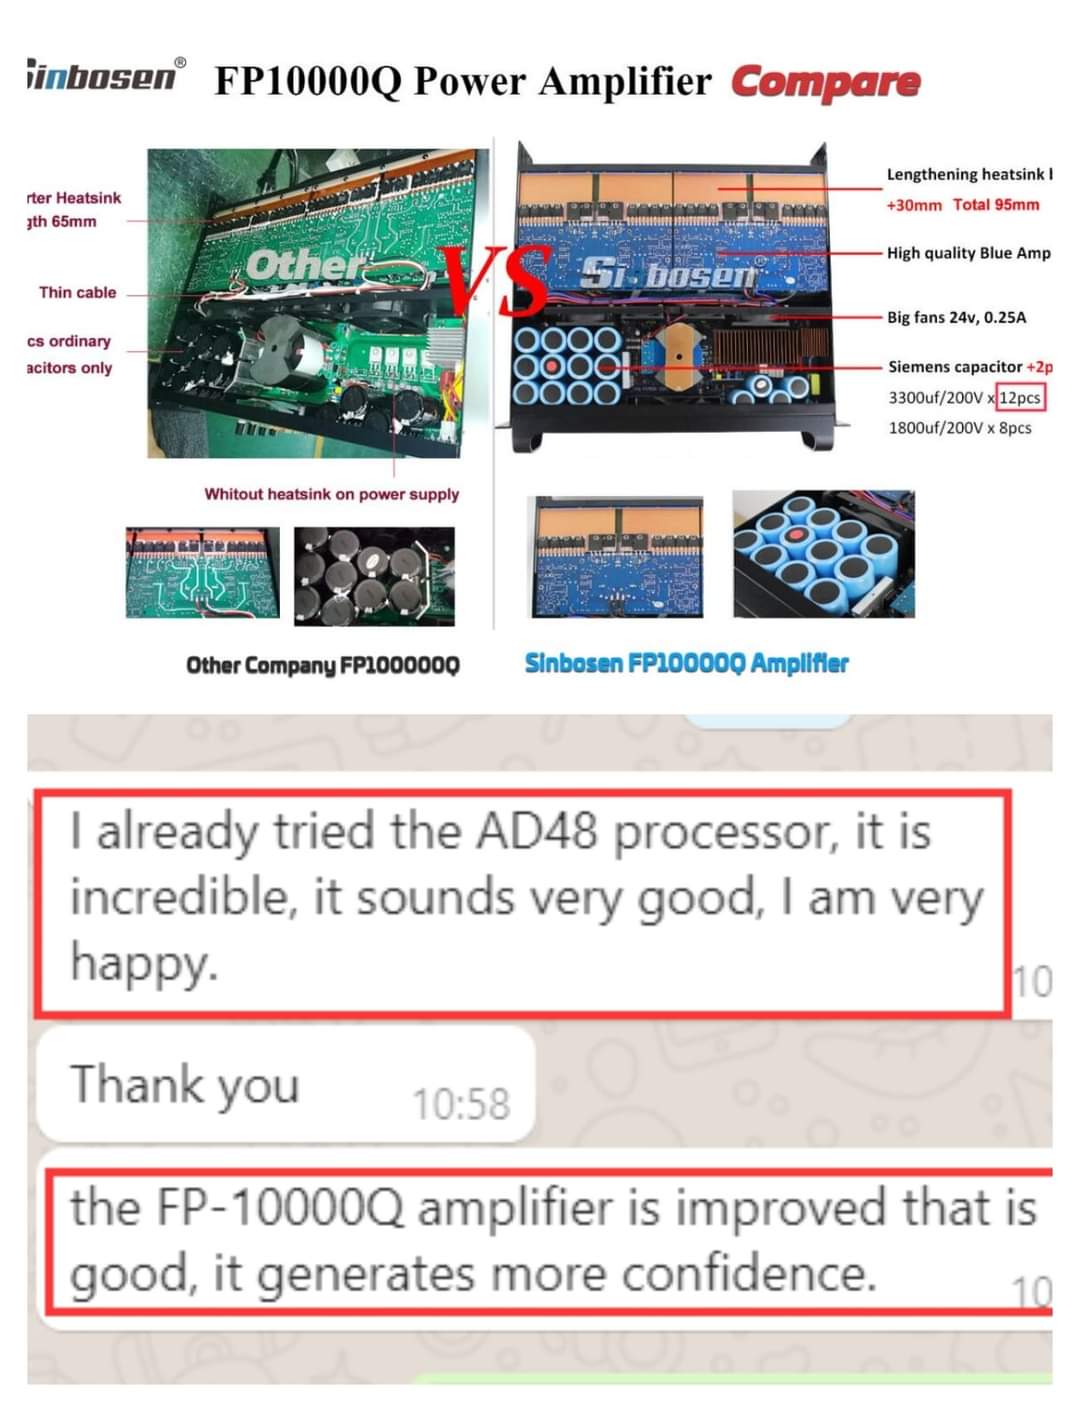 Como é o feedback dos clientes sobre a versão aprimorada do amplificador de potência FP10000Q da sinbosenaudio